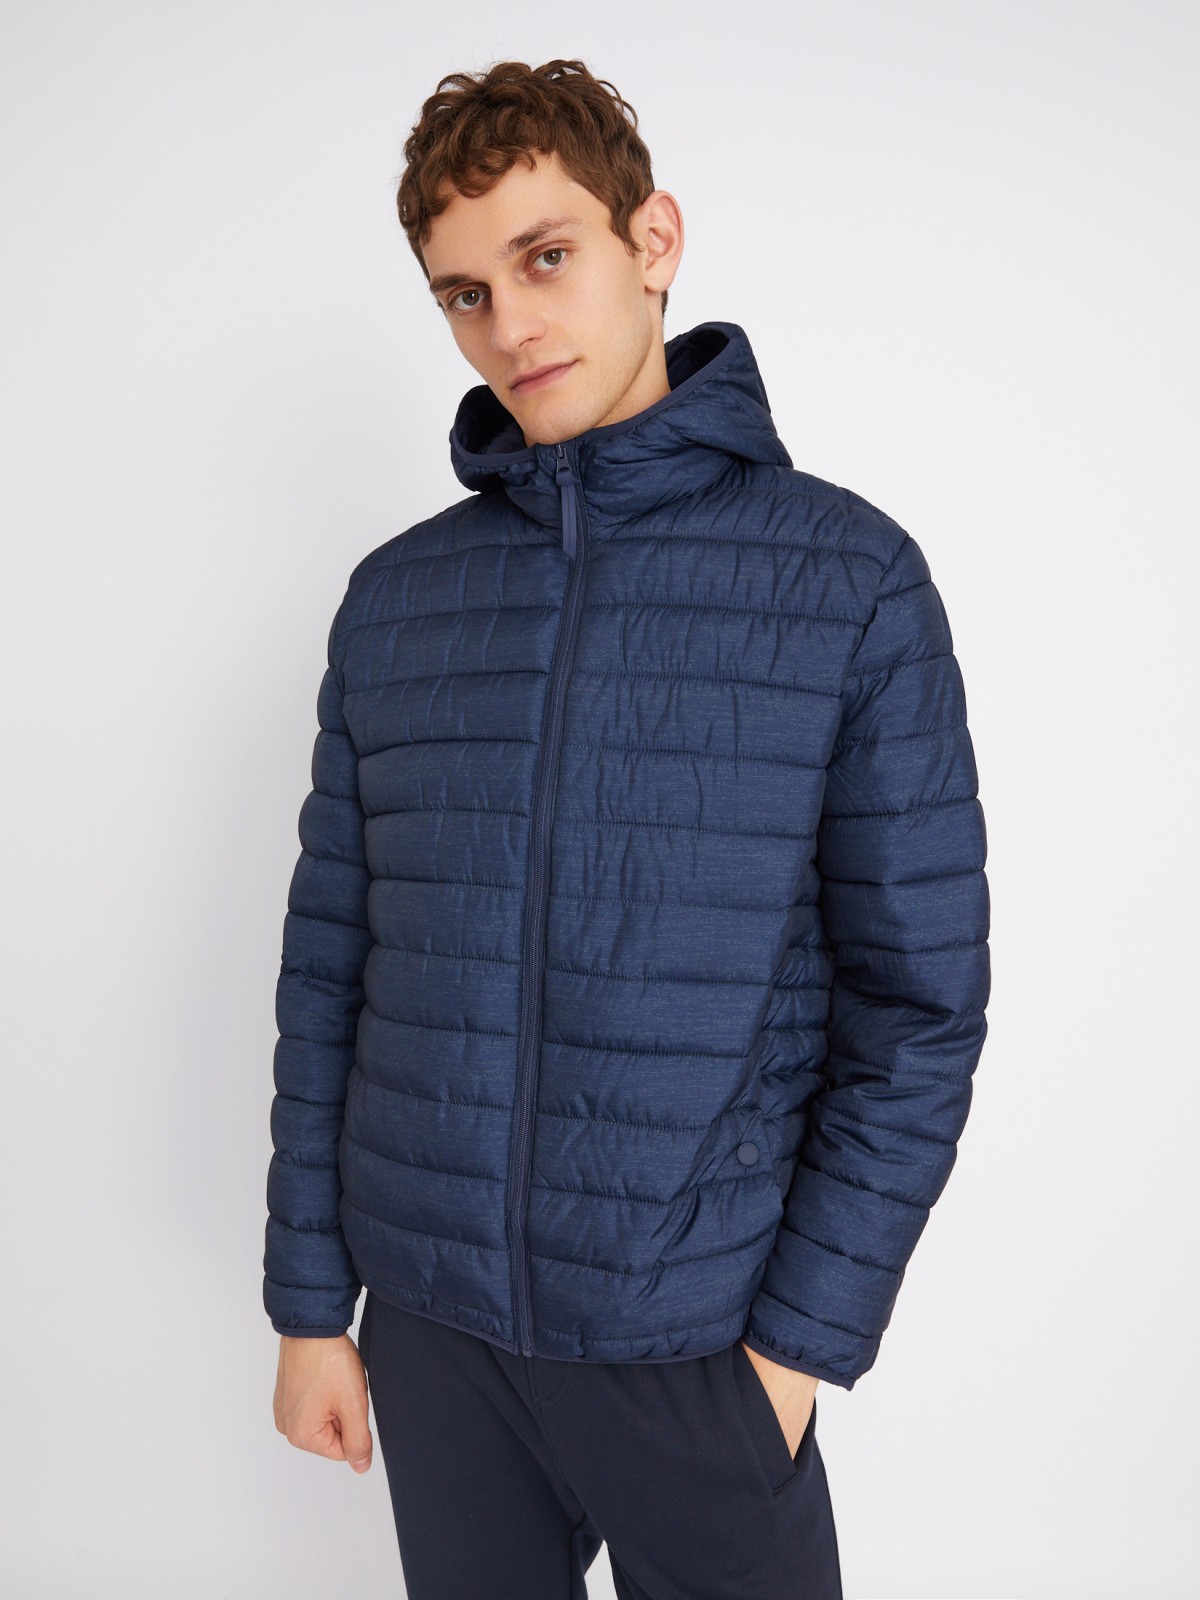 Лёгкая утеплённая стёганая куртка на молнии с капюшоном zolla 012335114184, цвет синий, размер L - фото 3